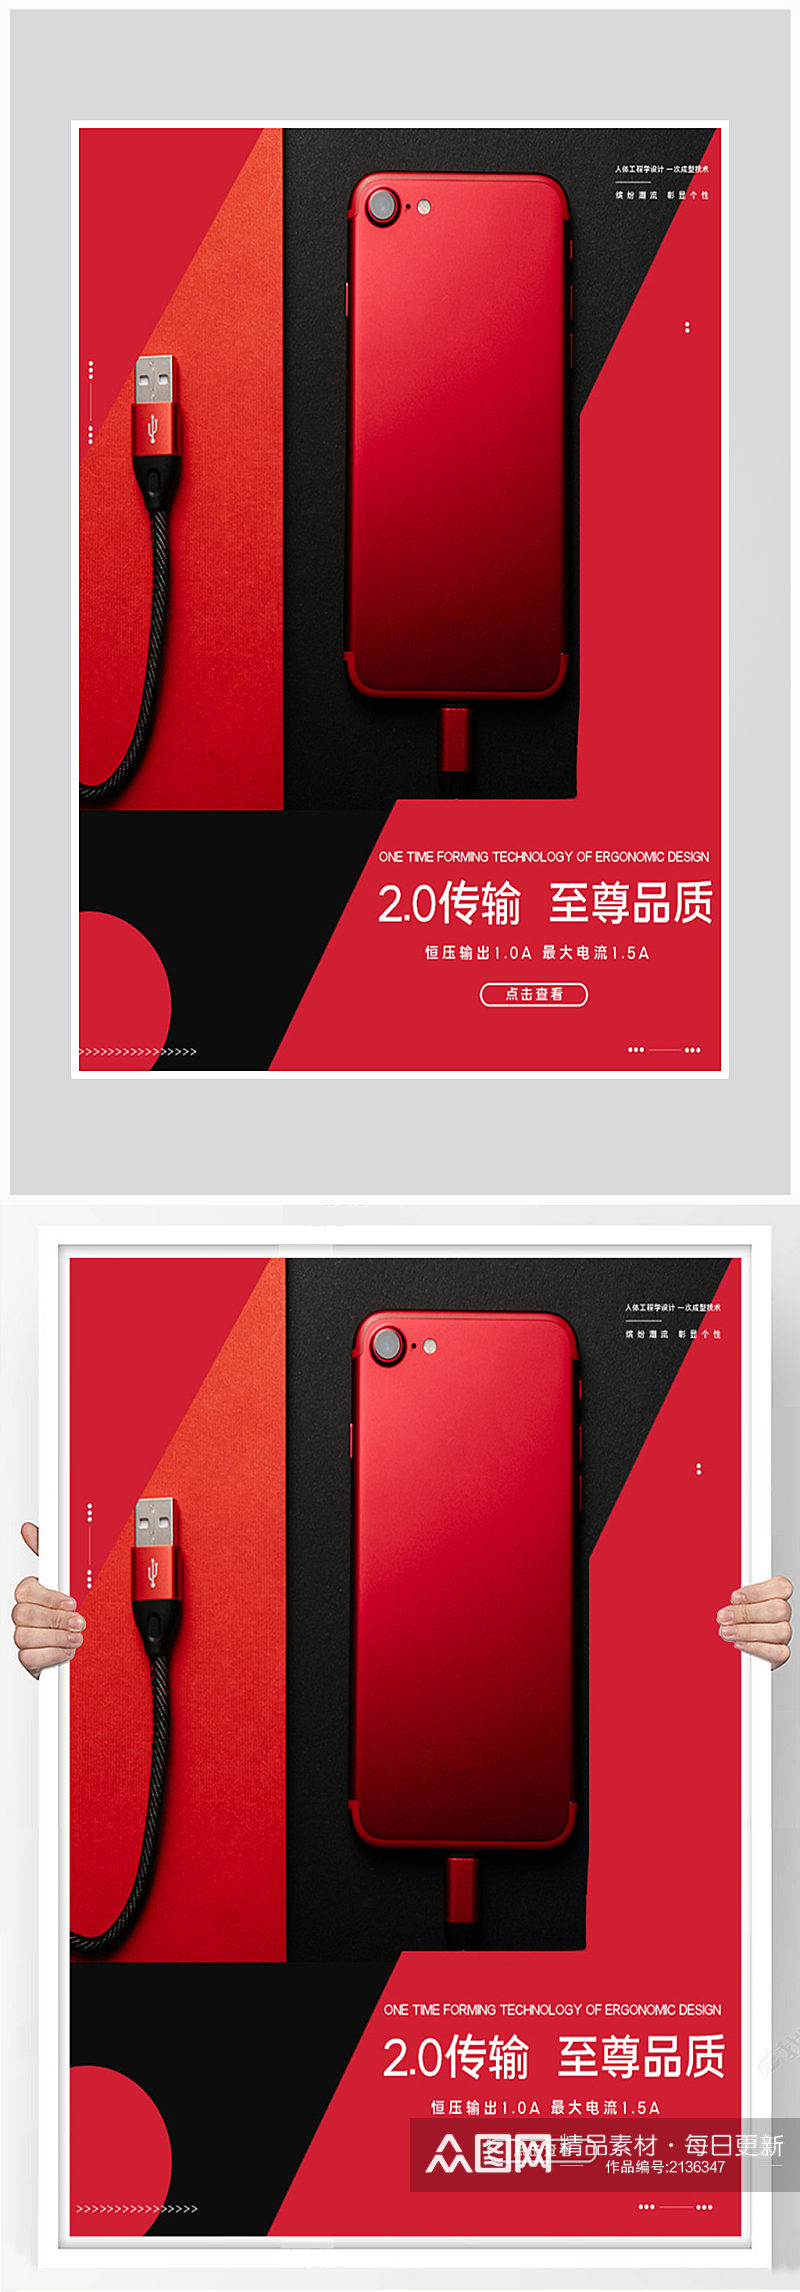 创意质感红色科技手机海报设计素材